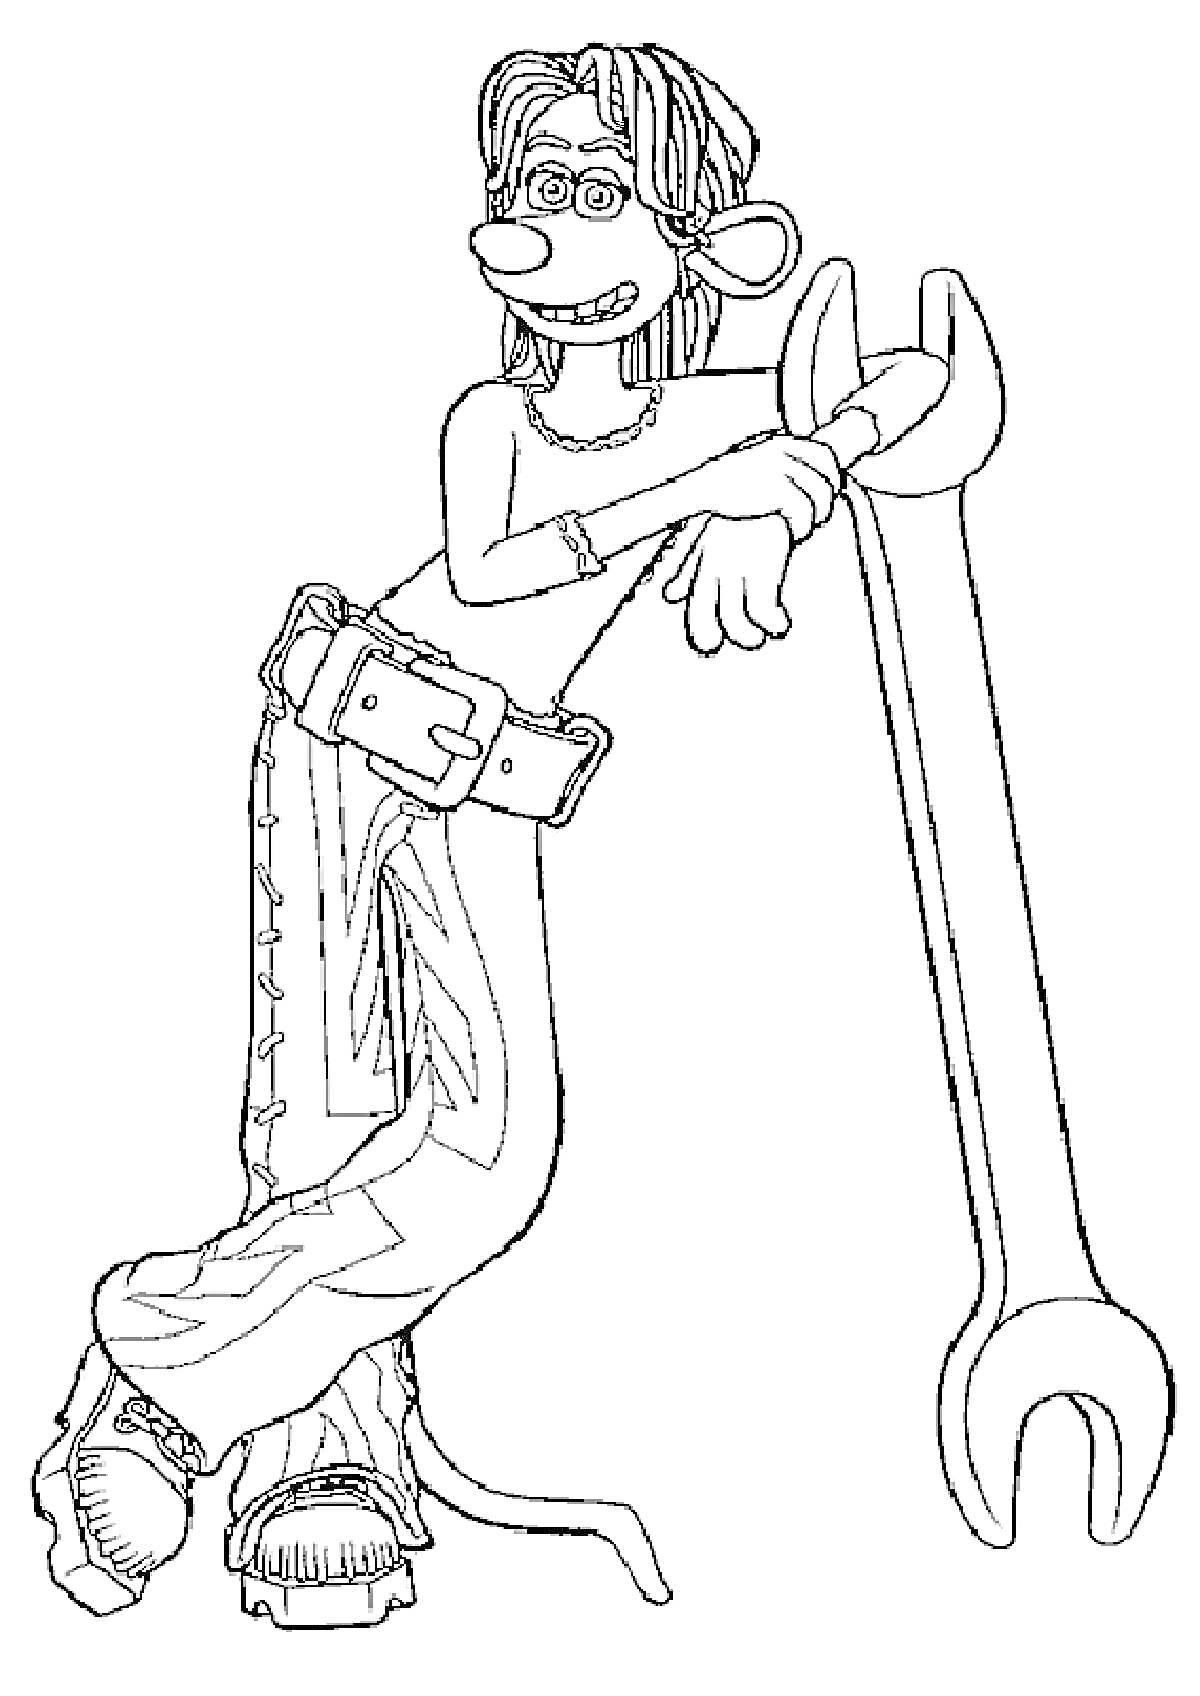 Персонаж в очках, с хвостом и большими зубами, опирающийся на большой разводной ключ